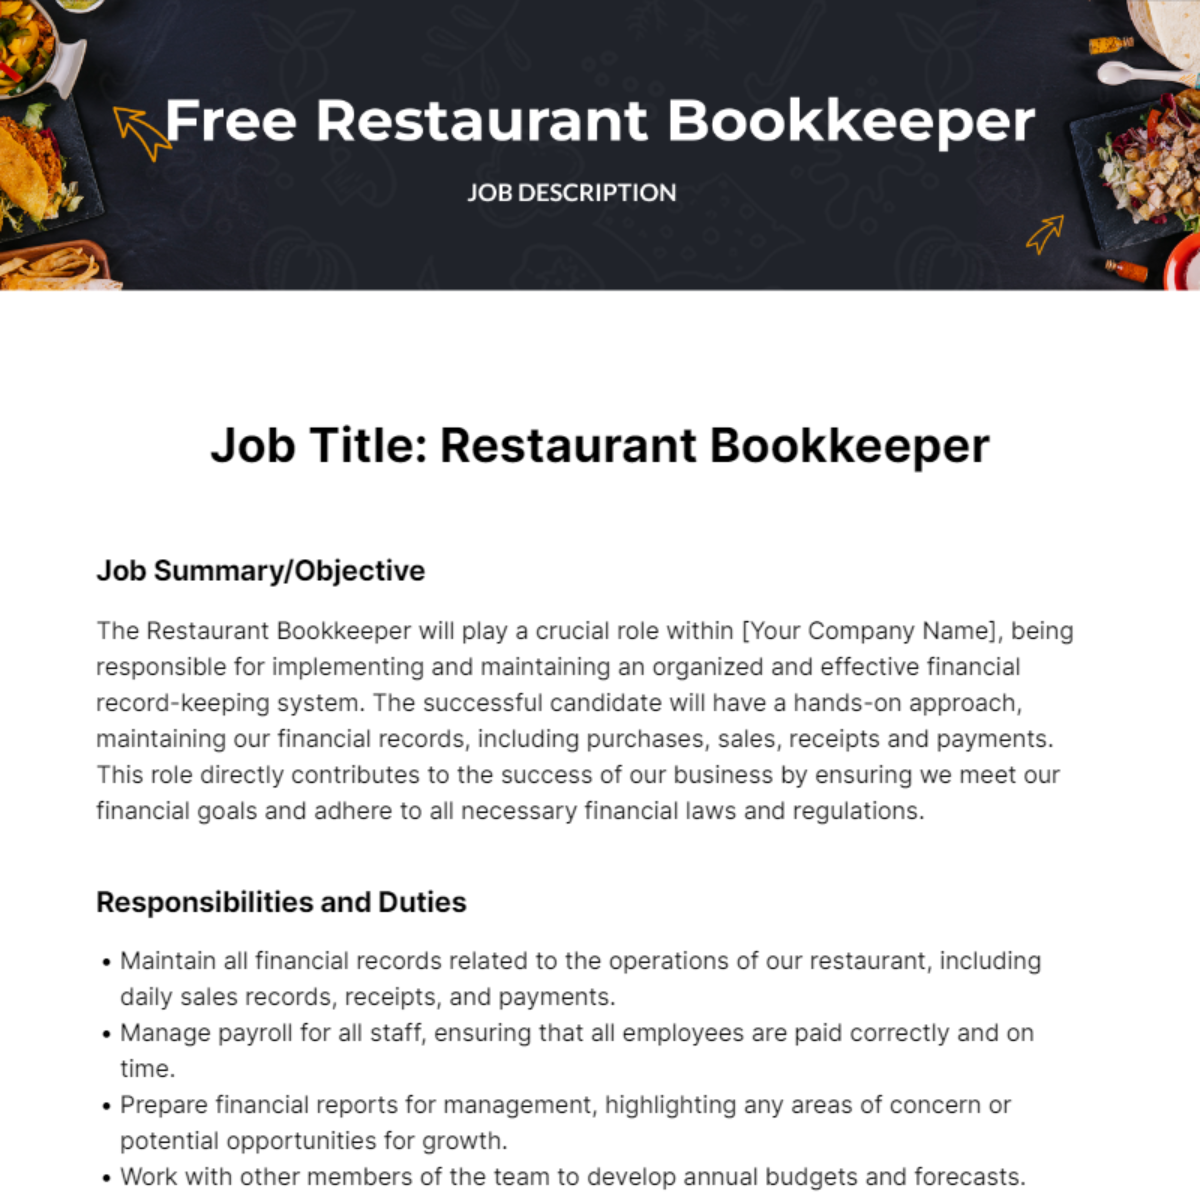 Restaurant Bookkeeper Job Description Template